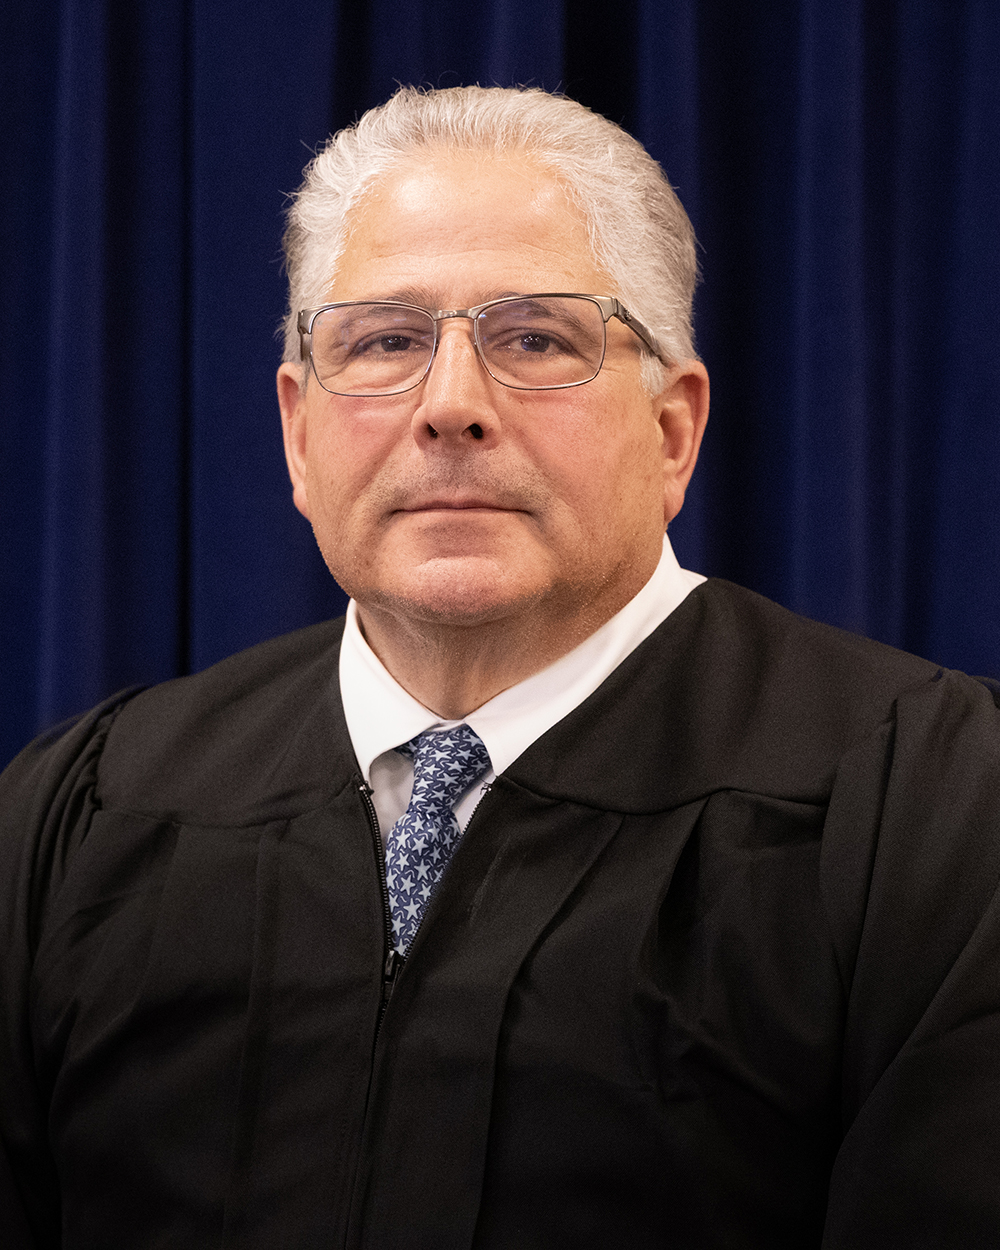 Judge Mark J. Kolmacic